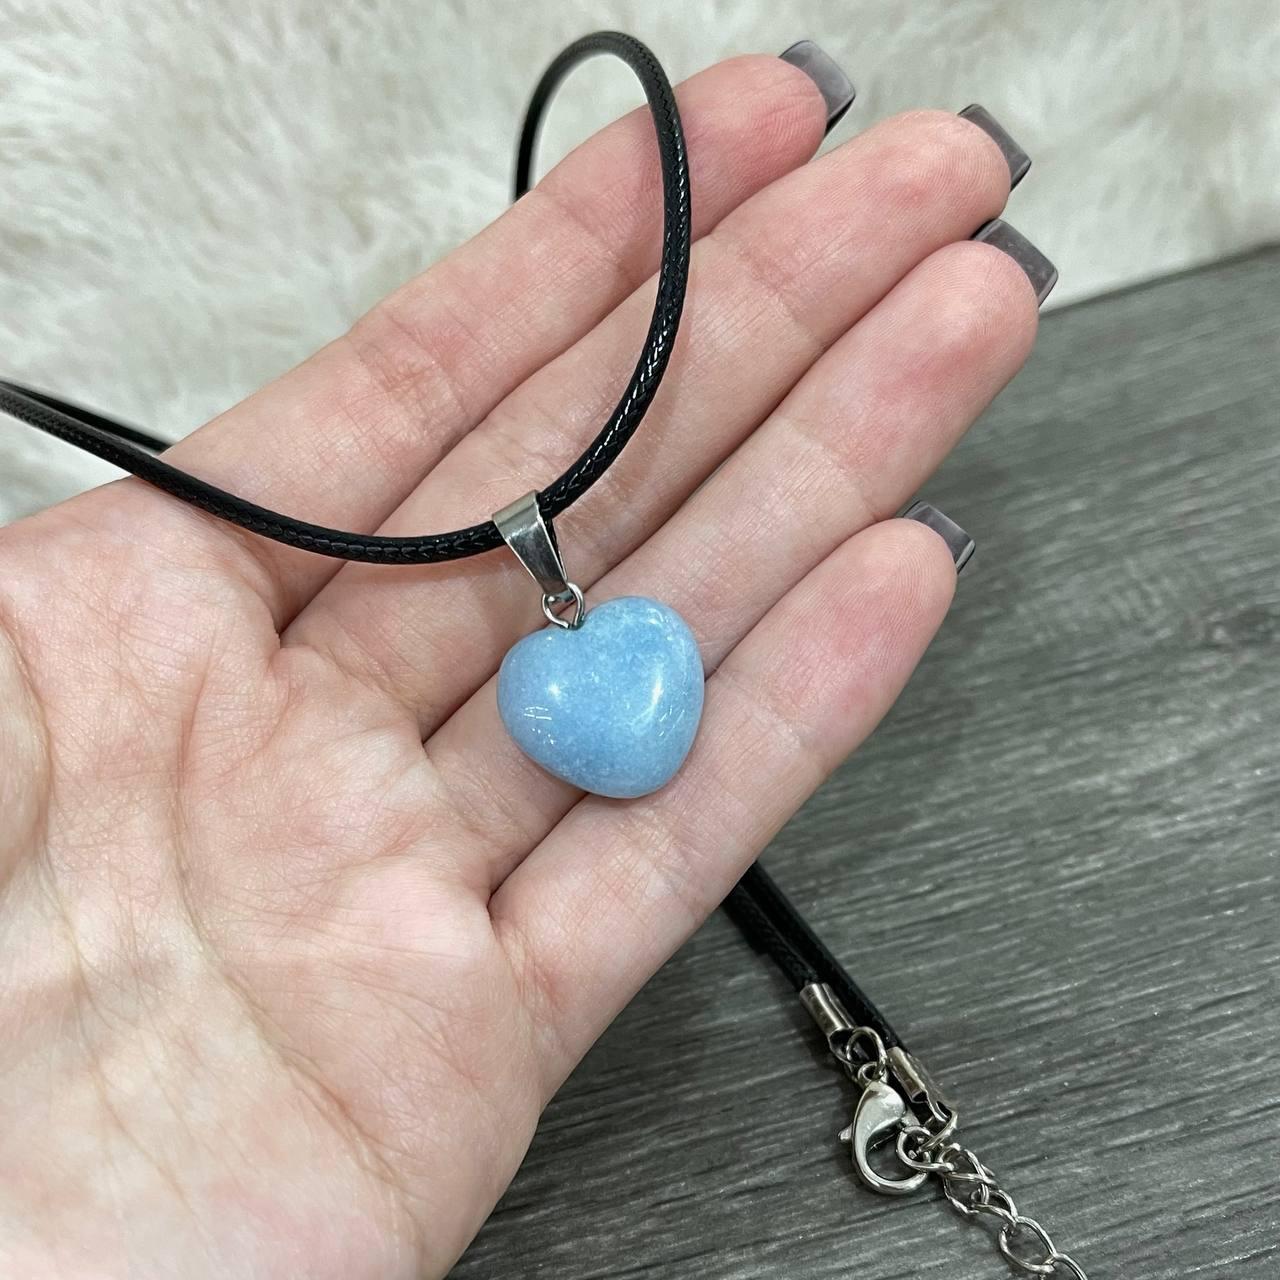 Натуральний камінь Блакитний Аквамарин кулон у формі міні сердечка на шнурочку - оригінальний подарунок дівчині